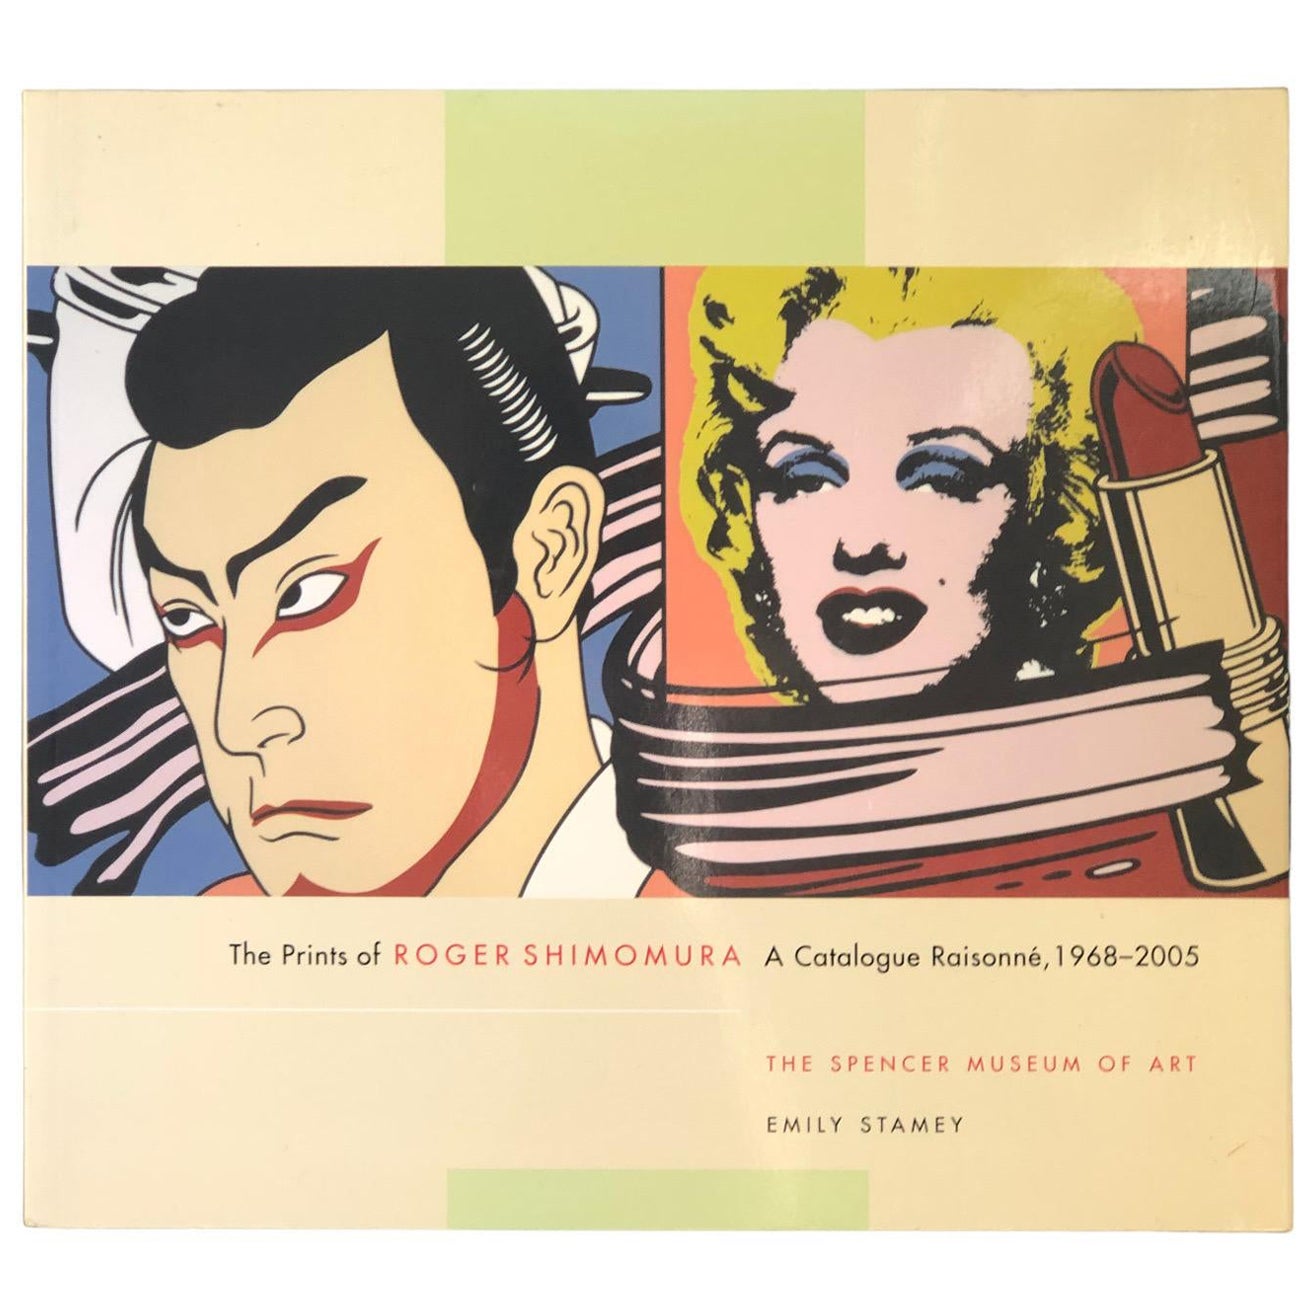 The Prints of Roger Shimomura, a Catalogue Raisonnè, 1968-2005